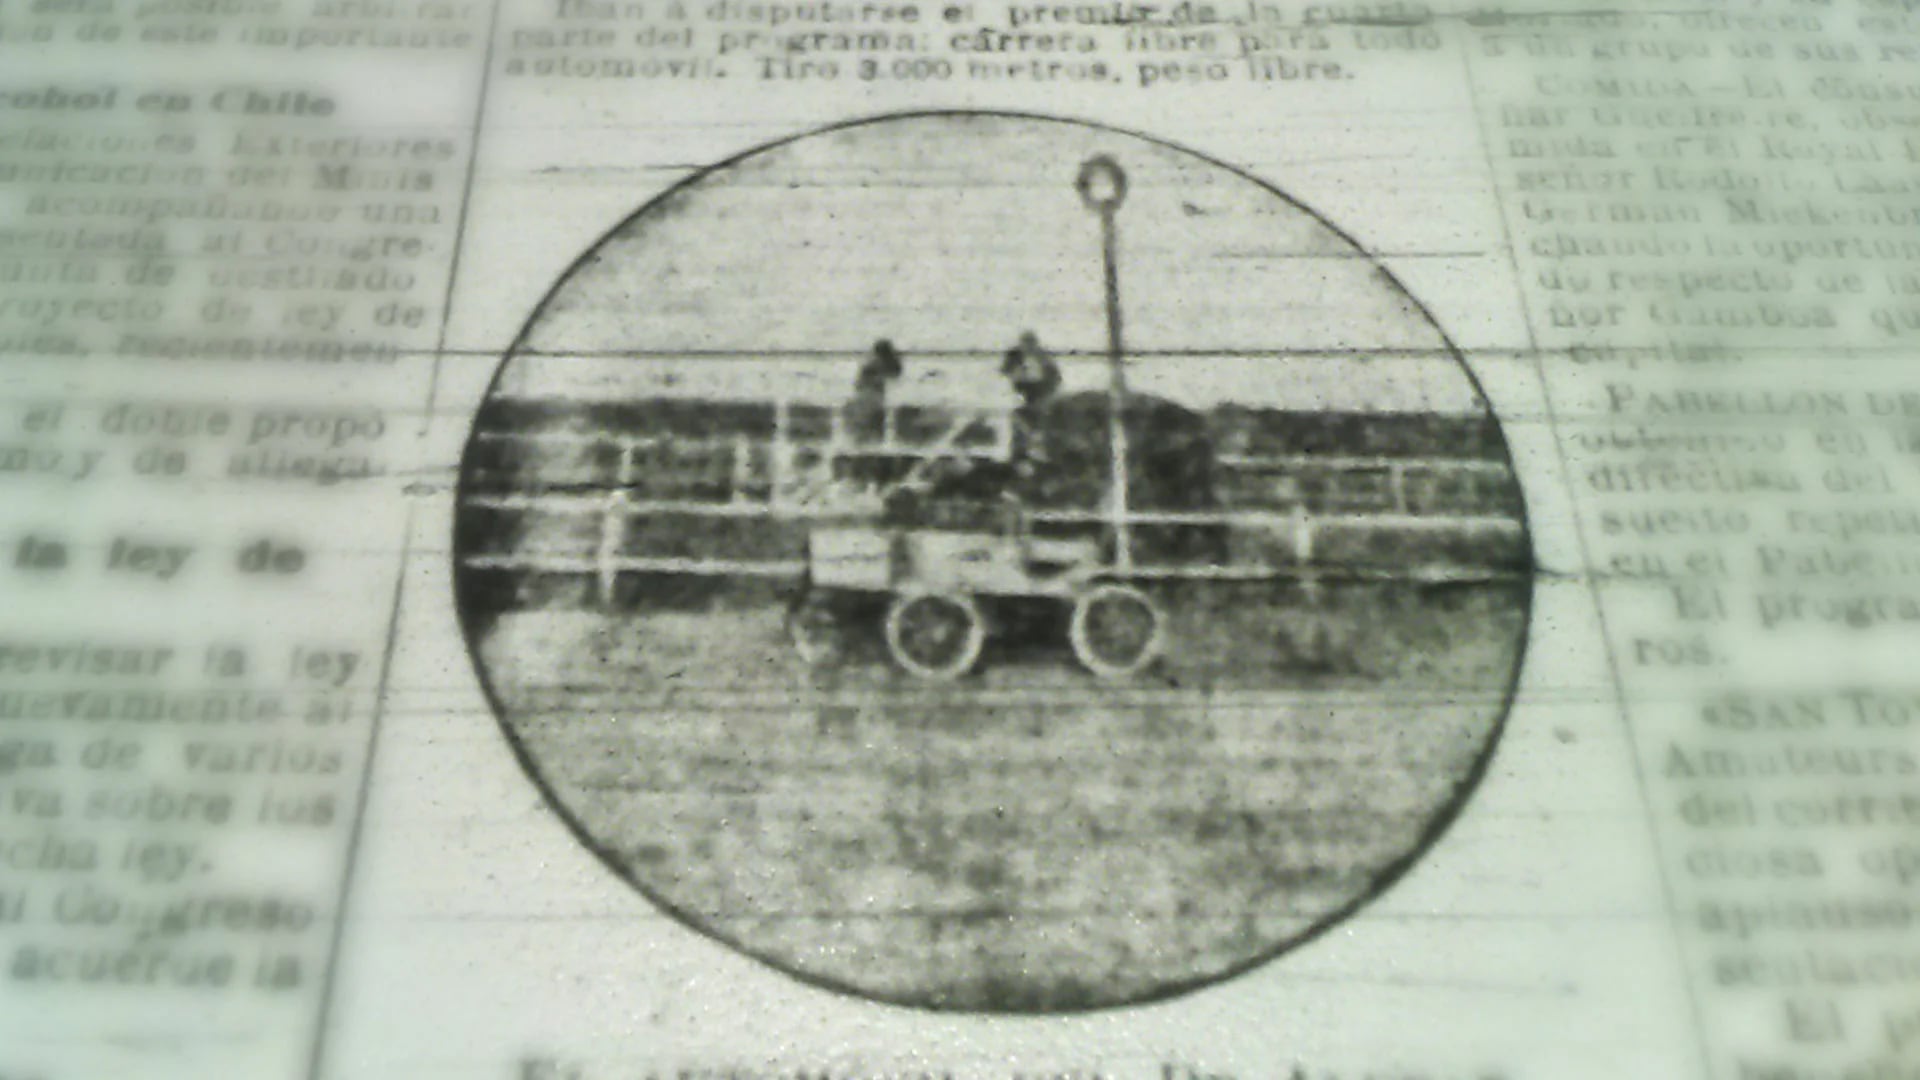 El Locomobile de Alvear en el diario La Prensa del 17 de noviembre de 1901 (Infobae)